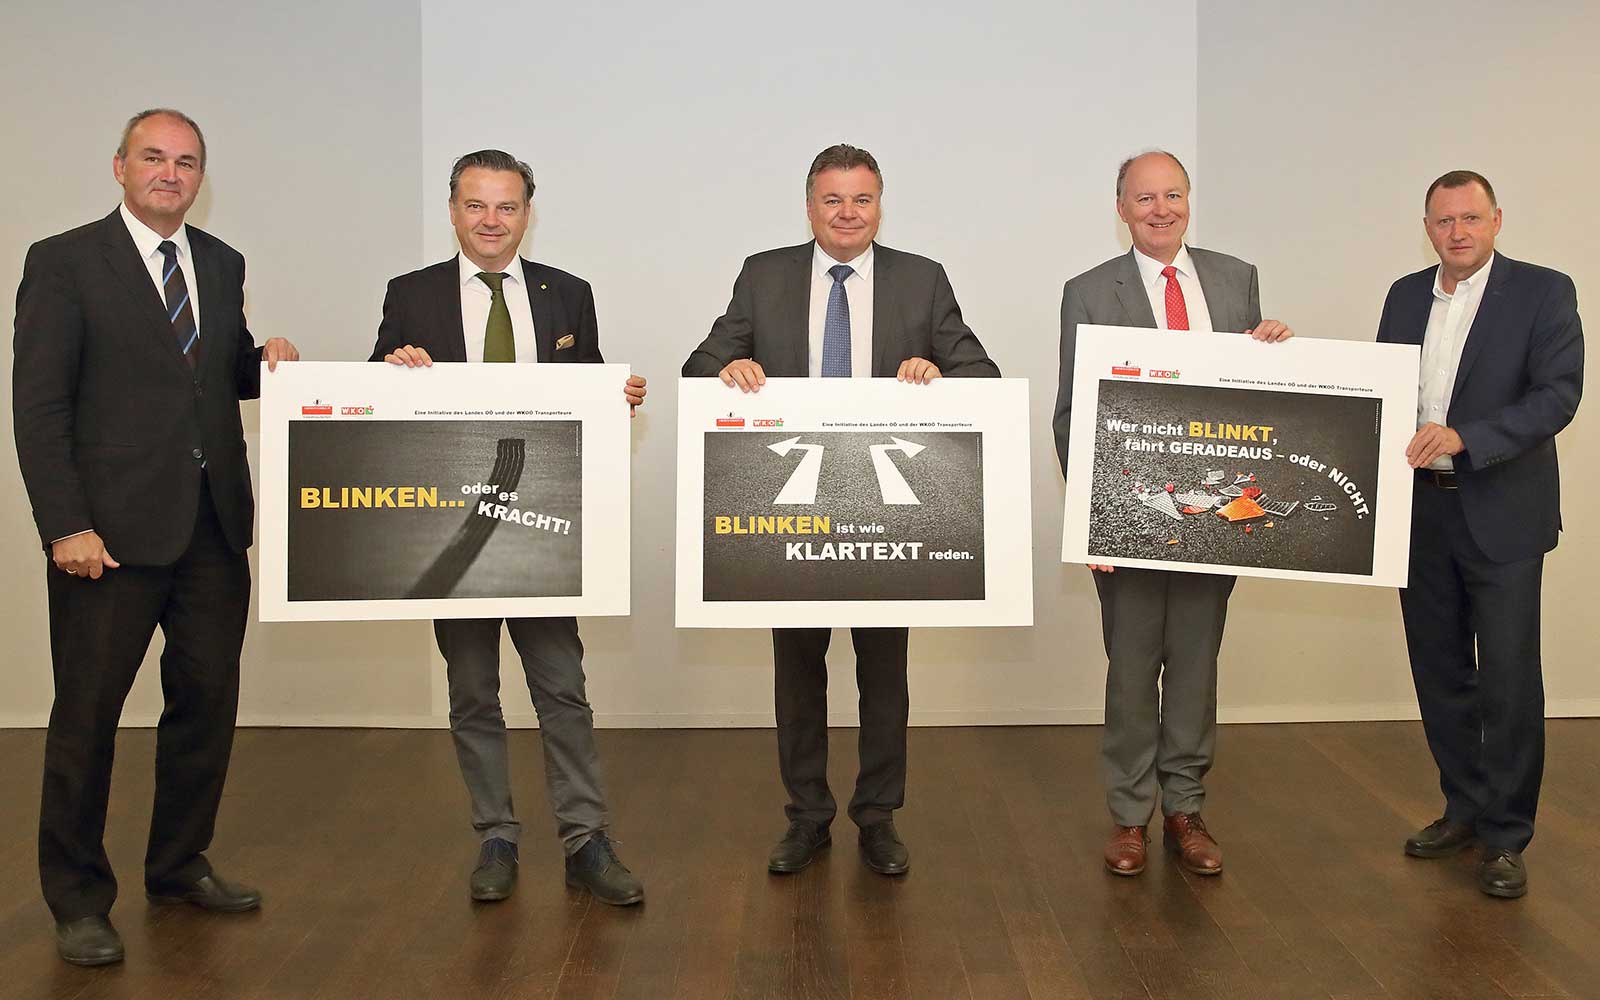 Das Land Oberösterreich präsentiert die Kampagne für Blinken im Straßenverkehr